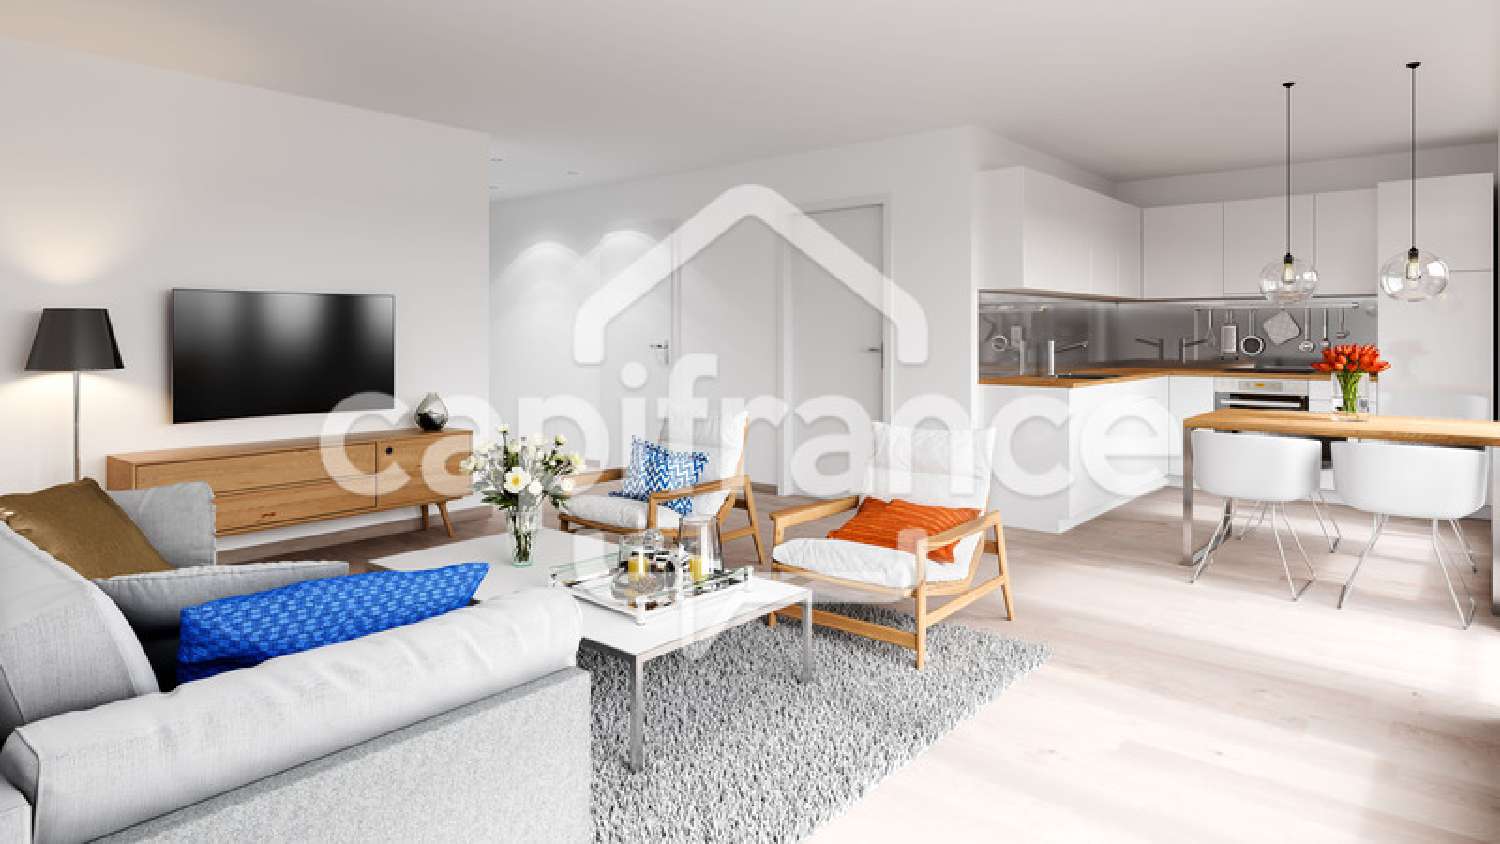 Saint-Nazaire Loire-Atlantique Wohnung/ Apartment Bild 6436249